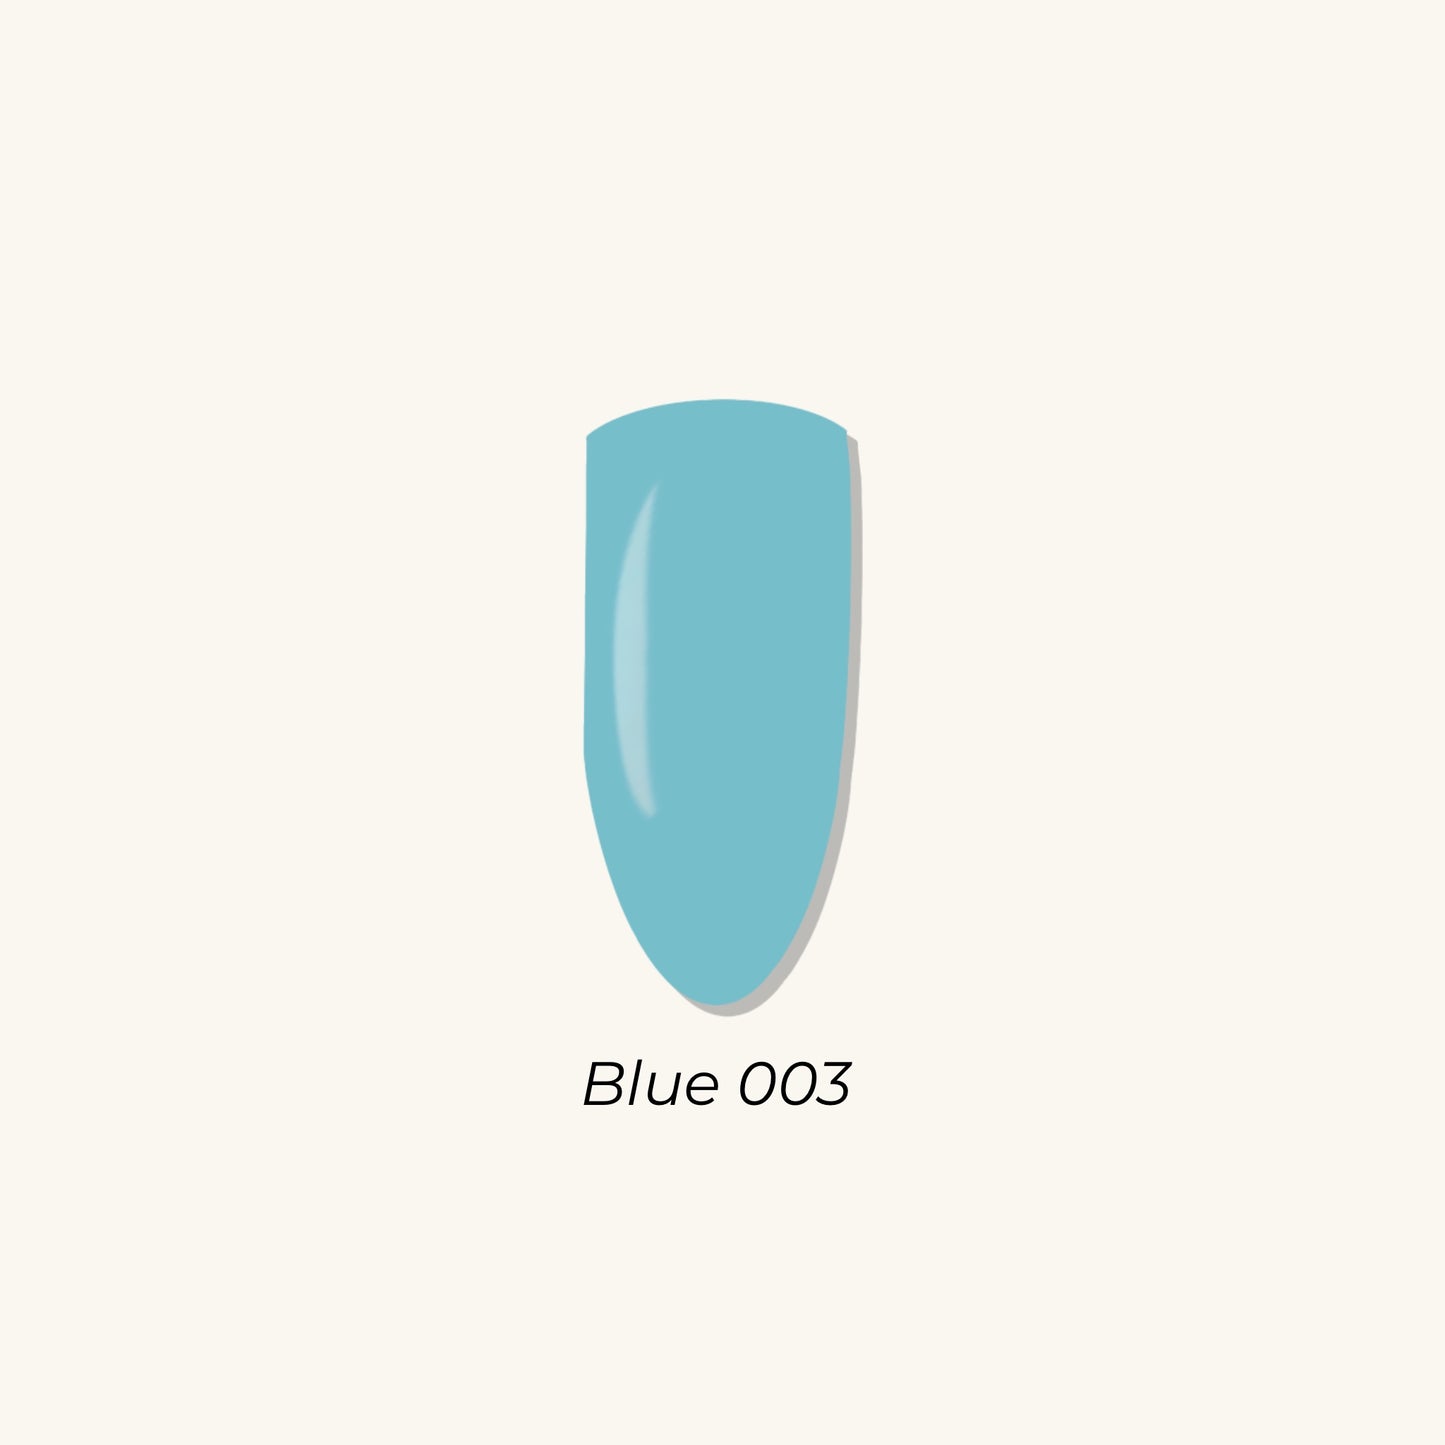 Blue 003